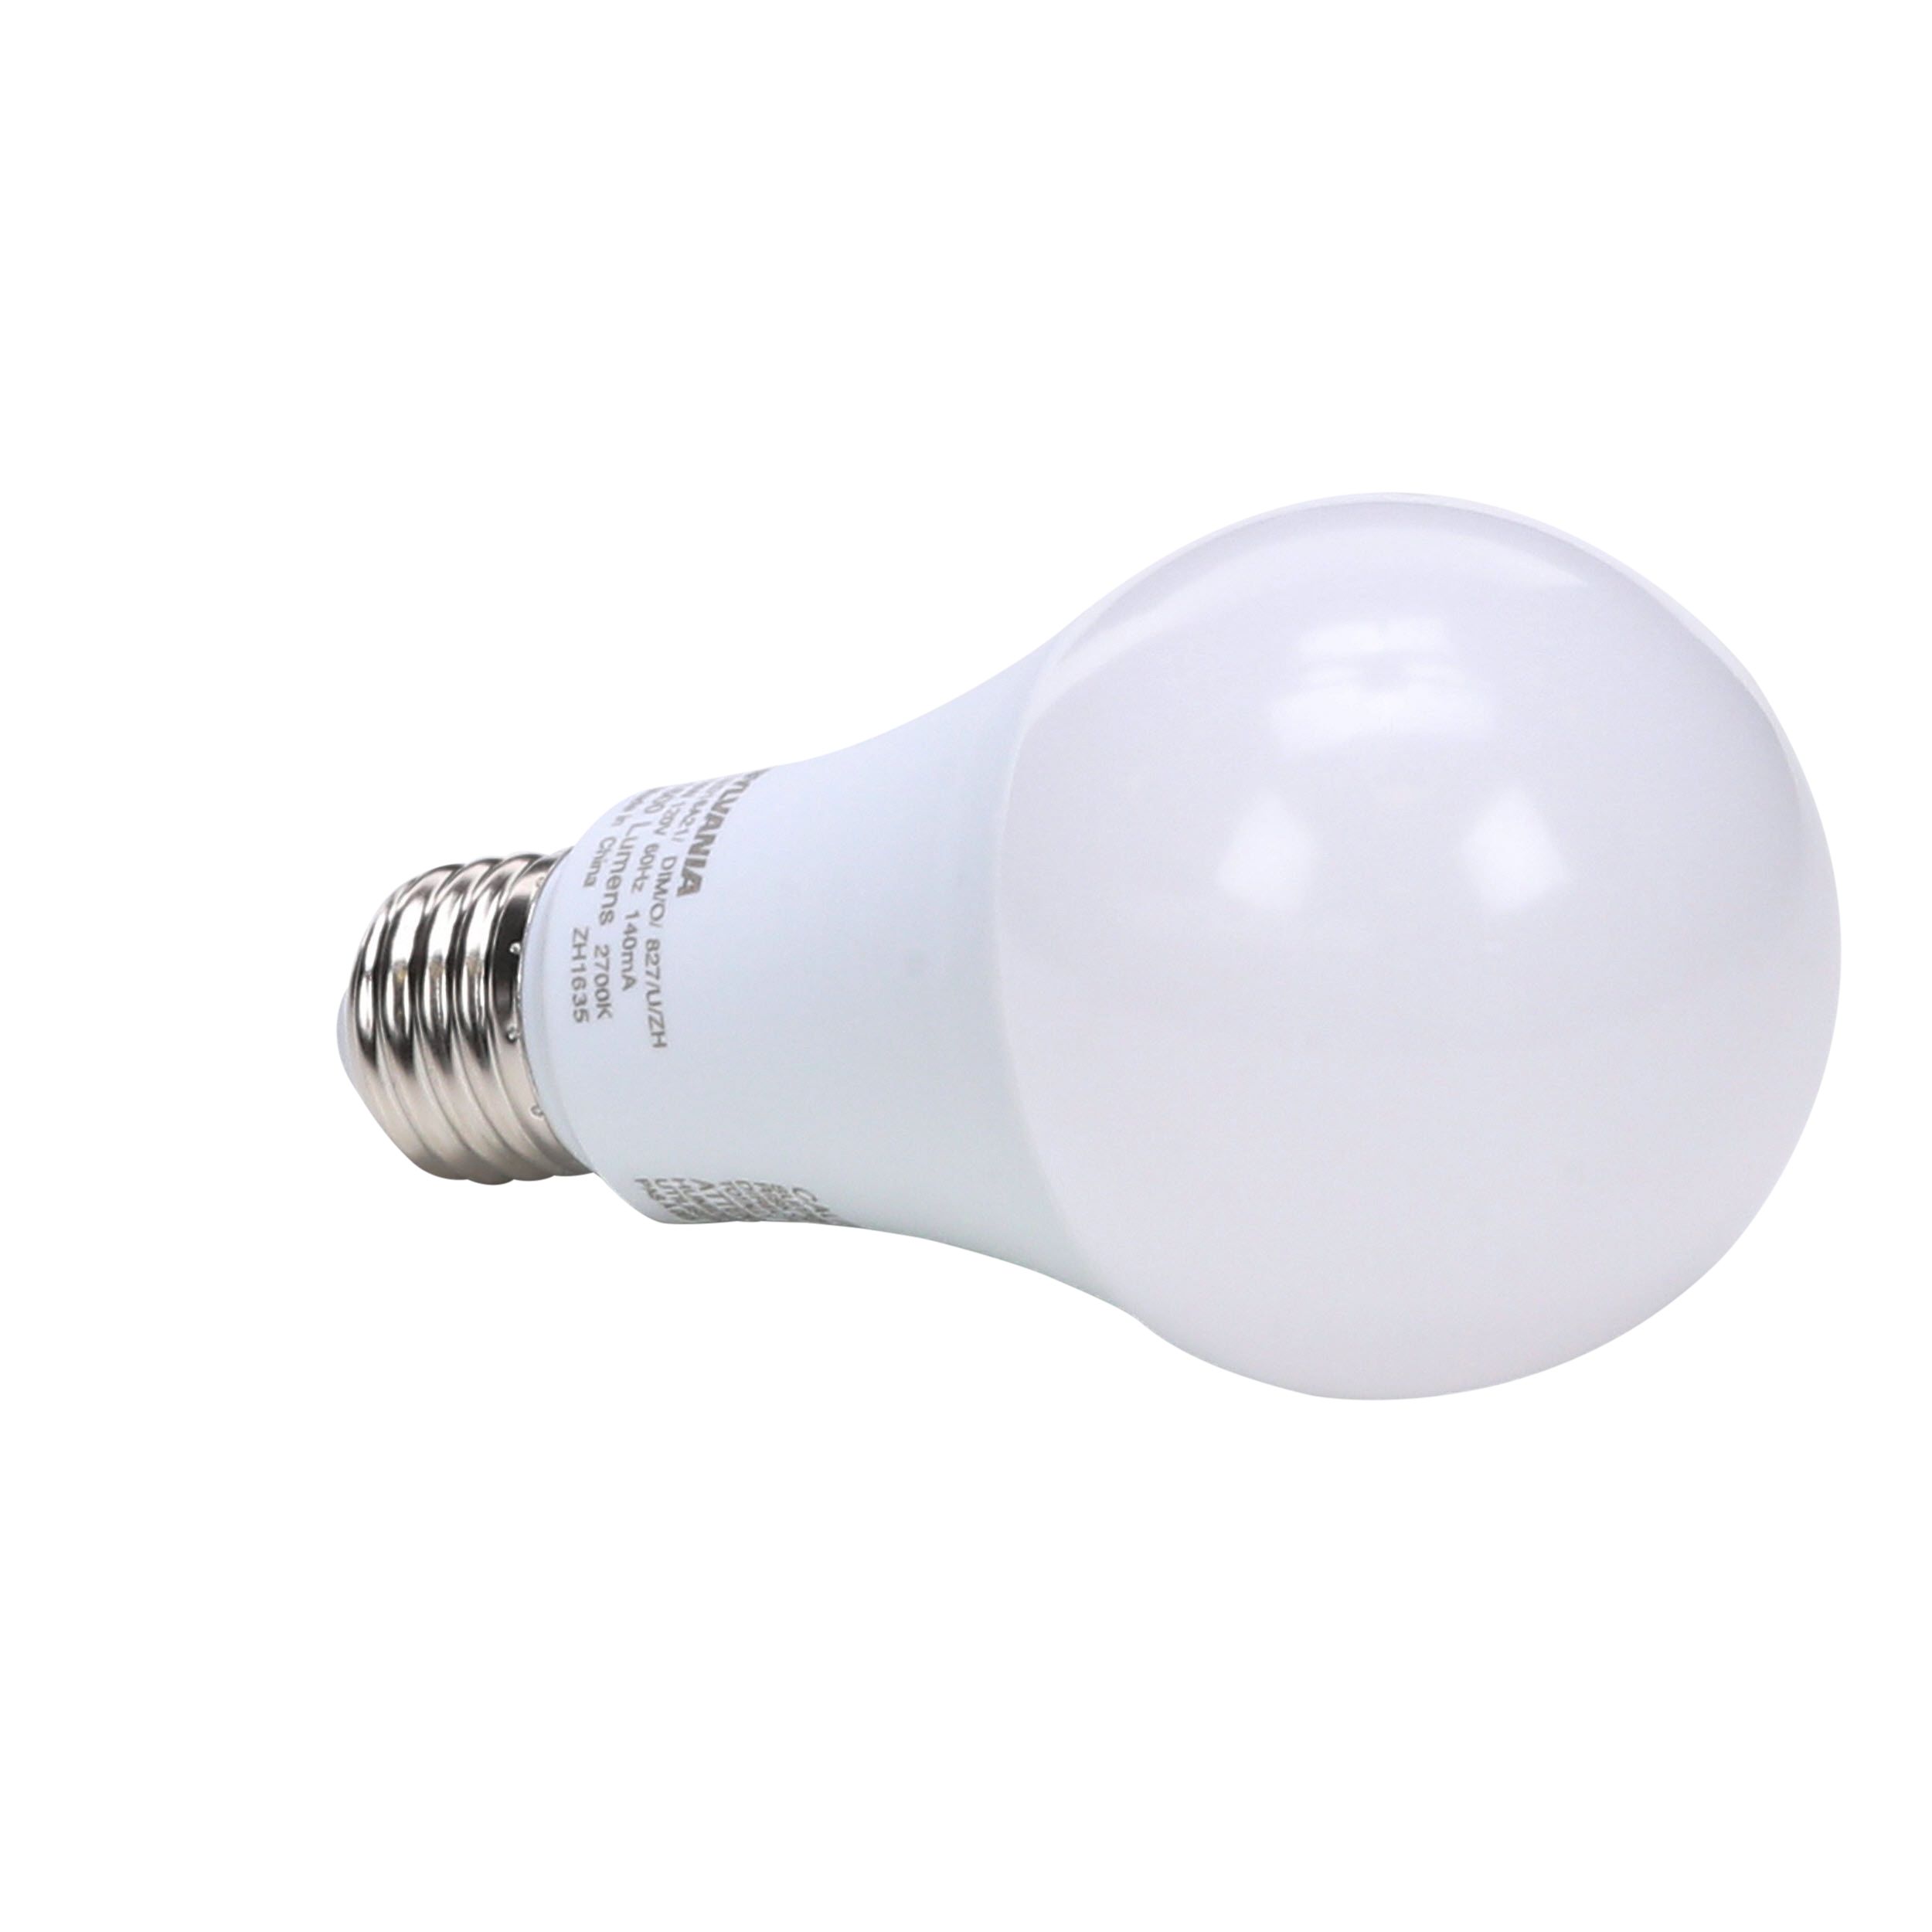 New Sylvania LED 100w 75112-0 Ceiling Light 2700k soft white opale 